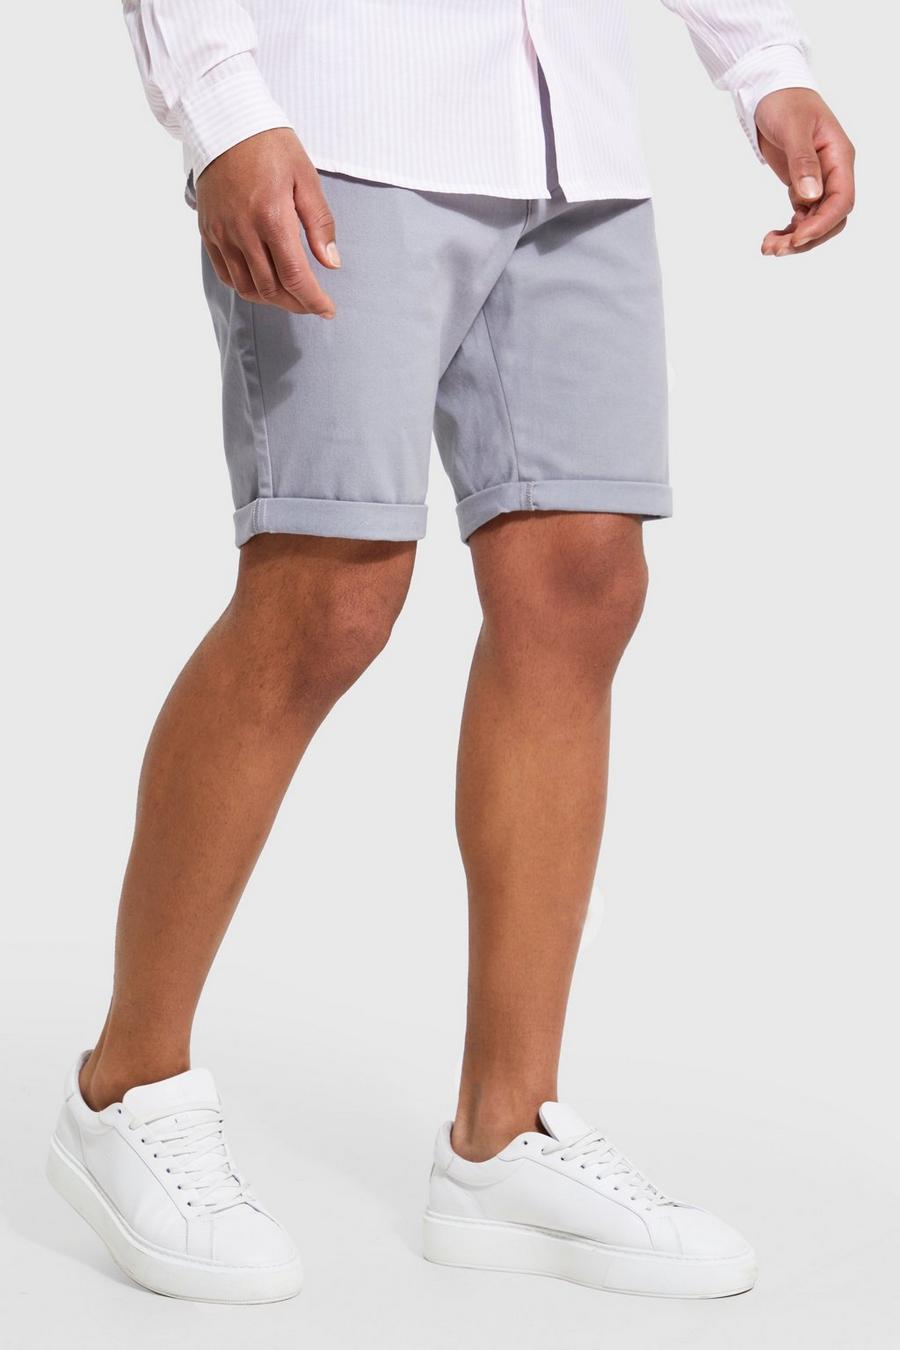 Tall Skinny Chino-Shorts, Grey grau